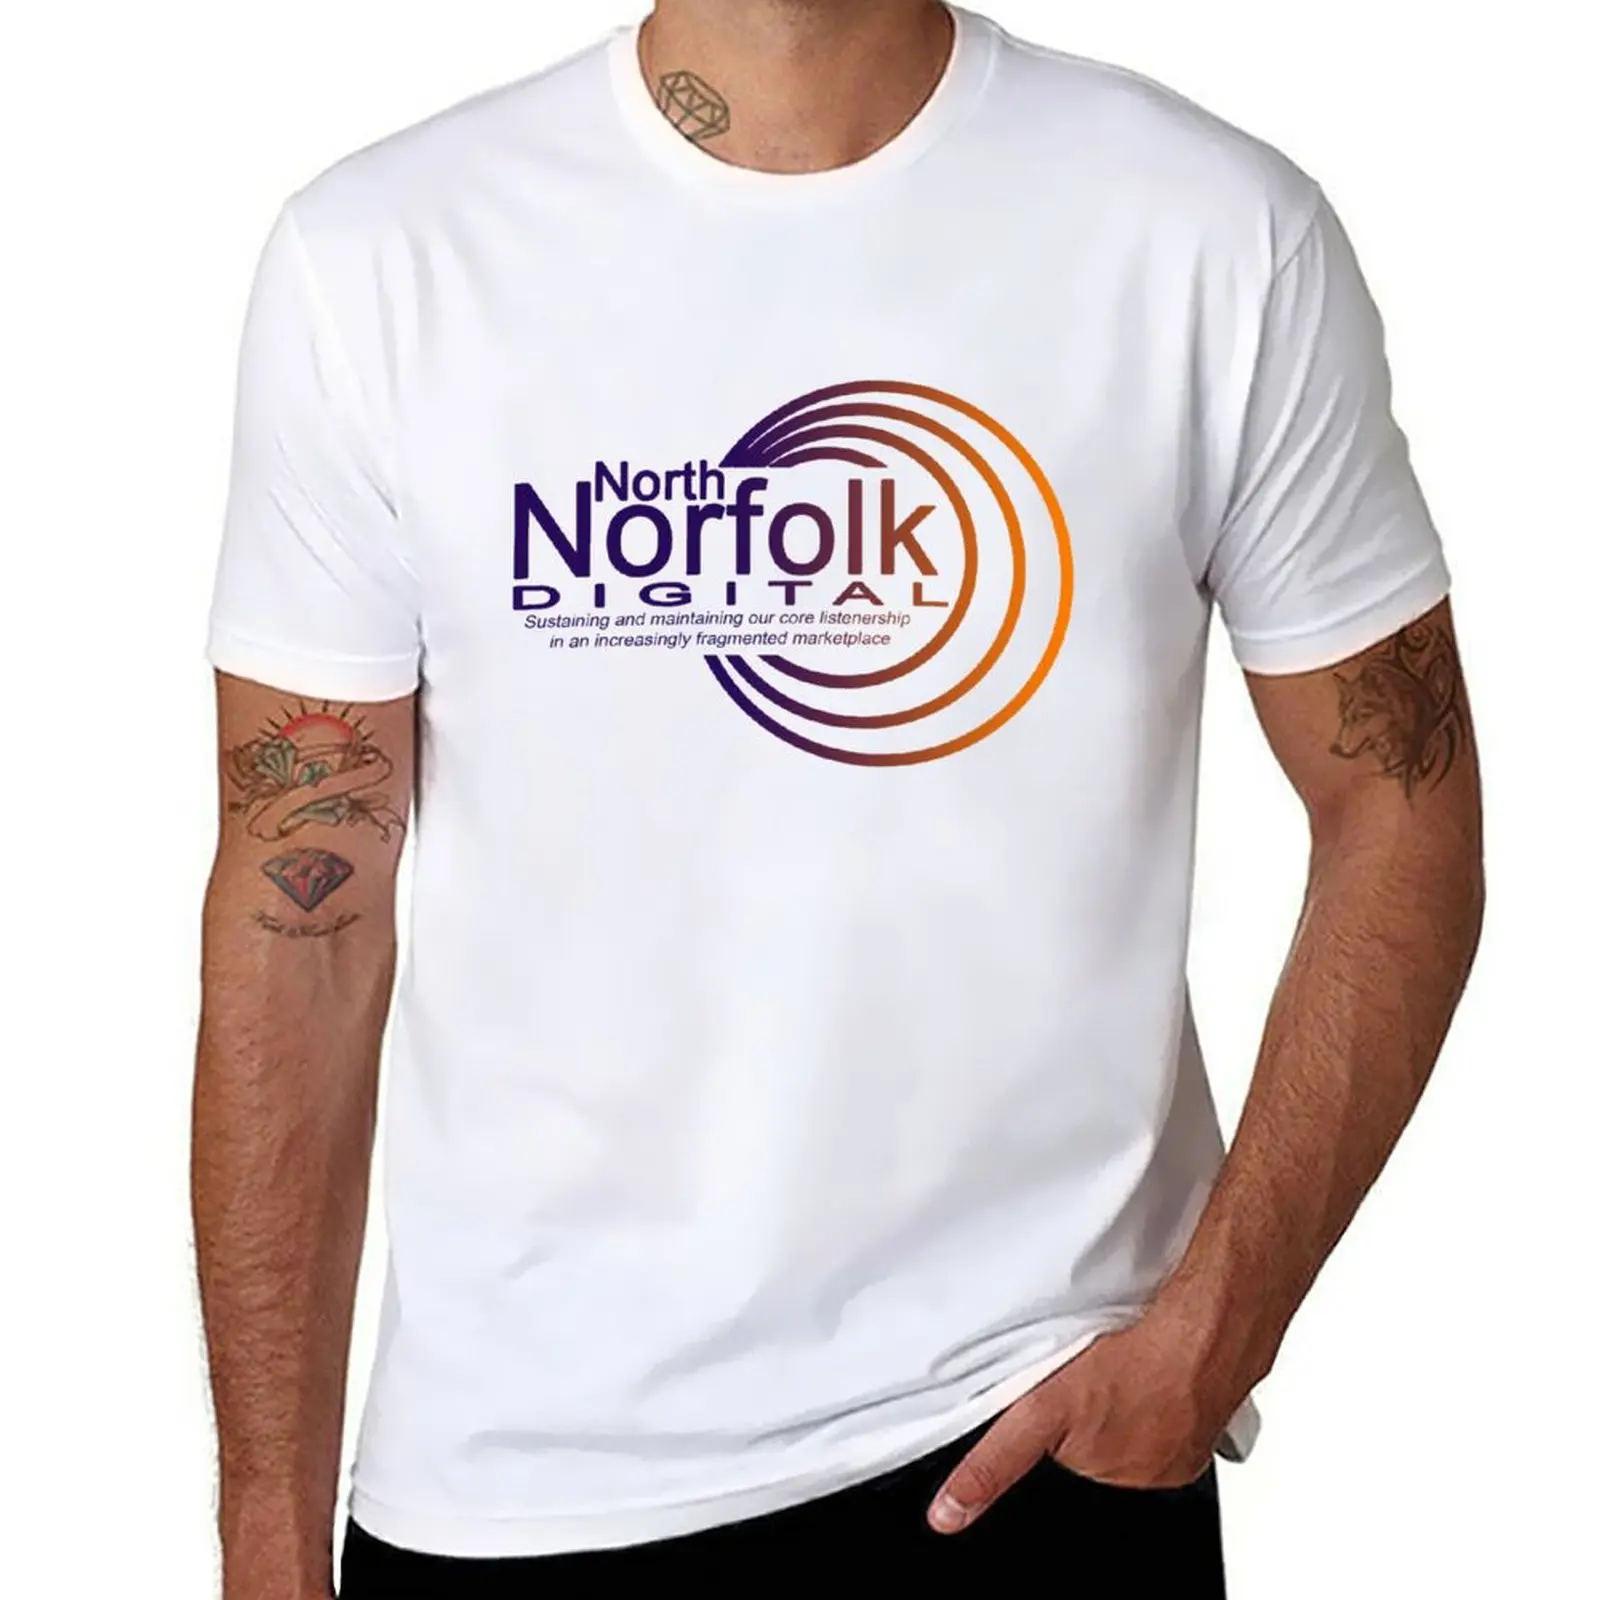 צפון נורפולק דיגיטלי חולצת קיץ מקסימום במשקל כבד חולצות קיץ העליון זיעה, חולצות שחורות חולצות לגברים